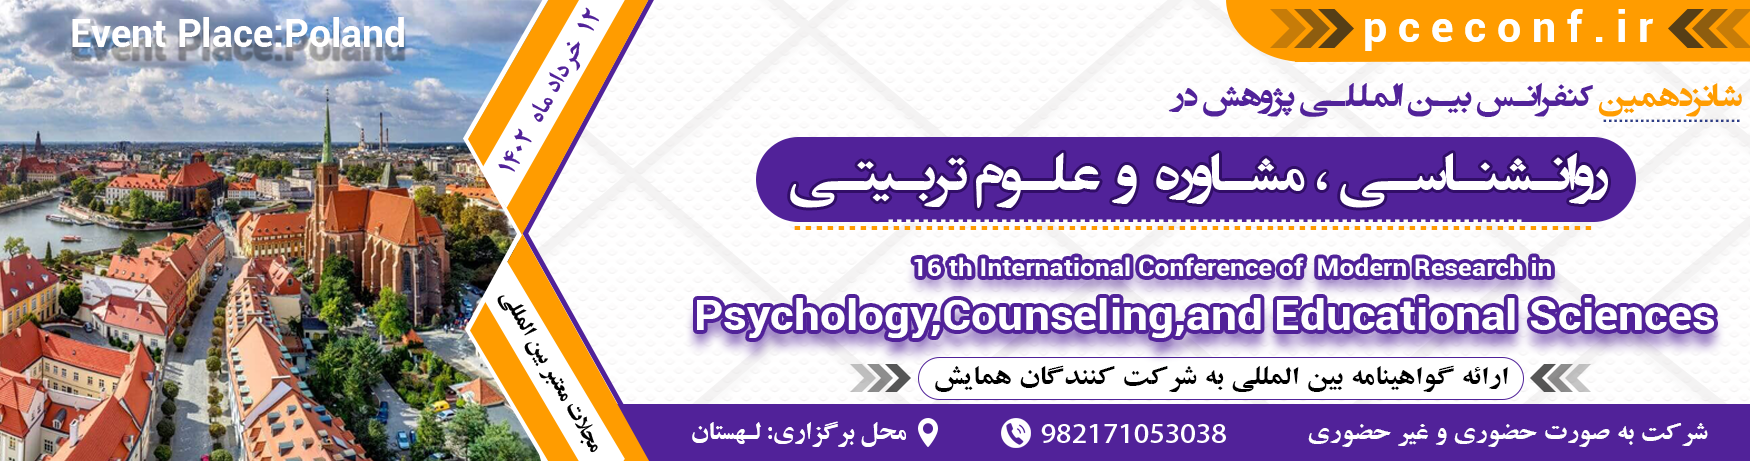 کنفرانس بین المللی روانشناسی ، مشاوره و علوم تربیتی